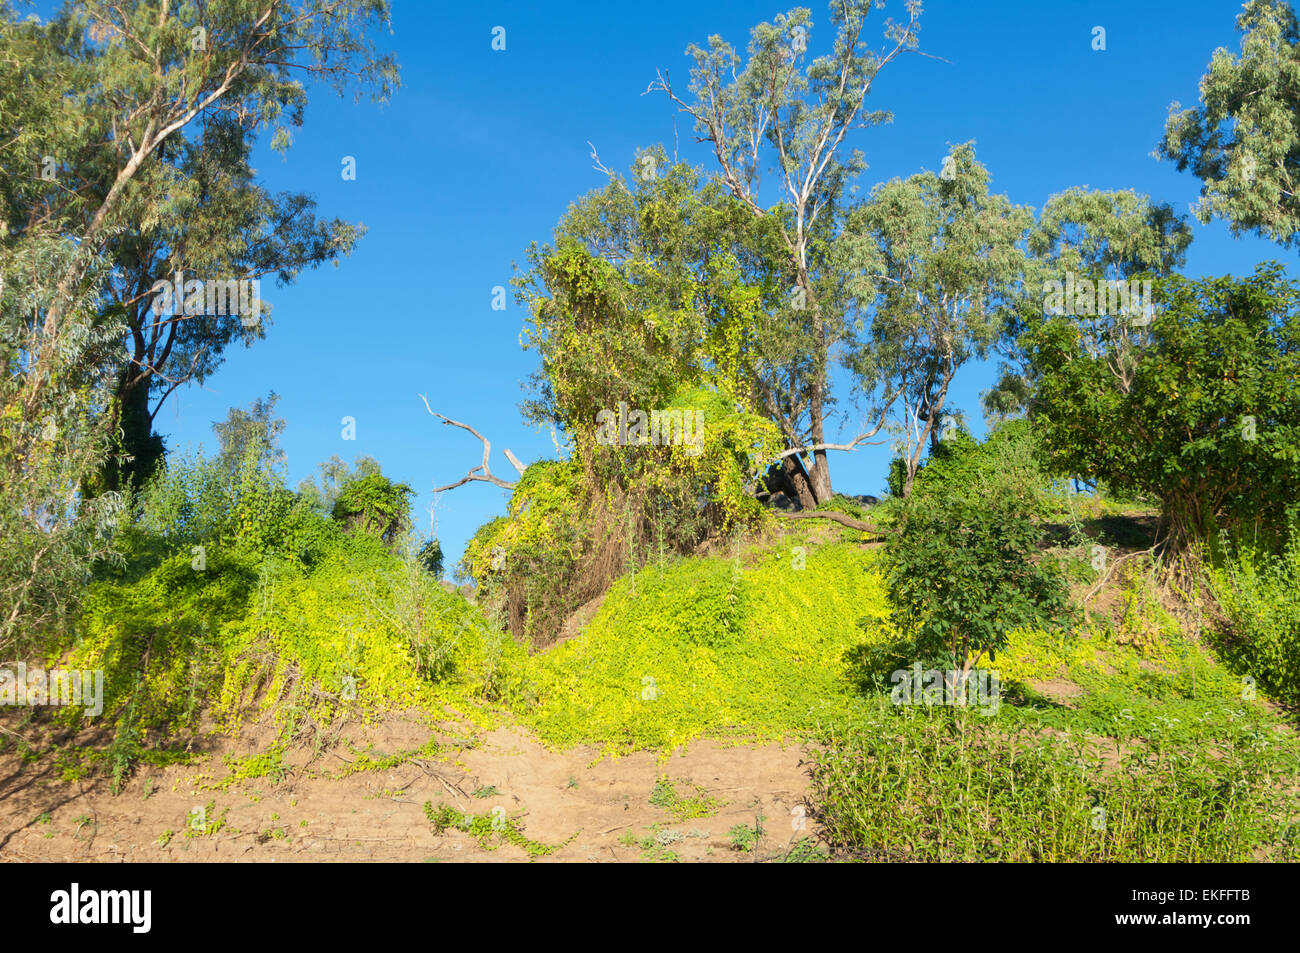 Le fruit de la vigne, les mauvaises herbes importés du Brésil ont été un problème dans la région de Kimberley, Australie occidentale Banque D'Images